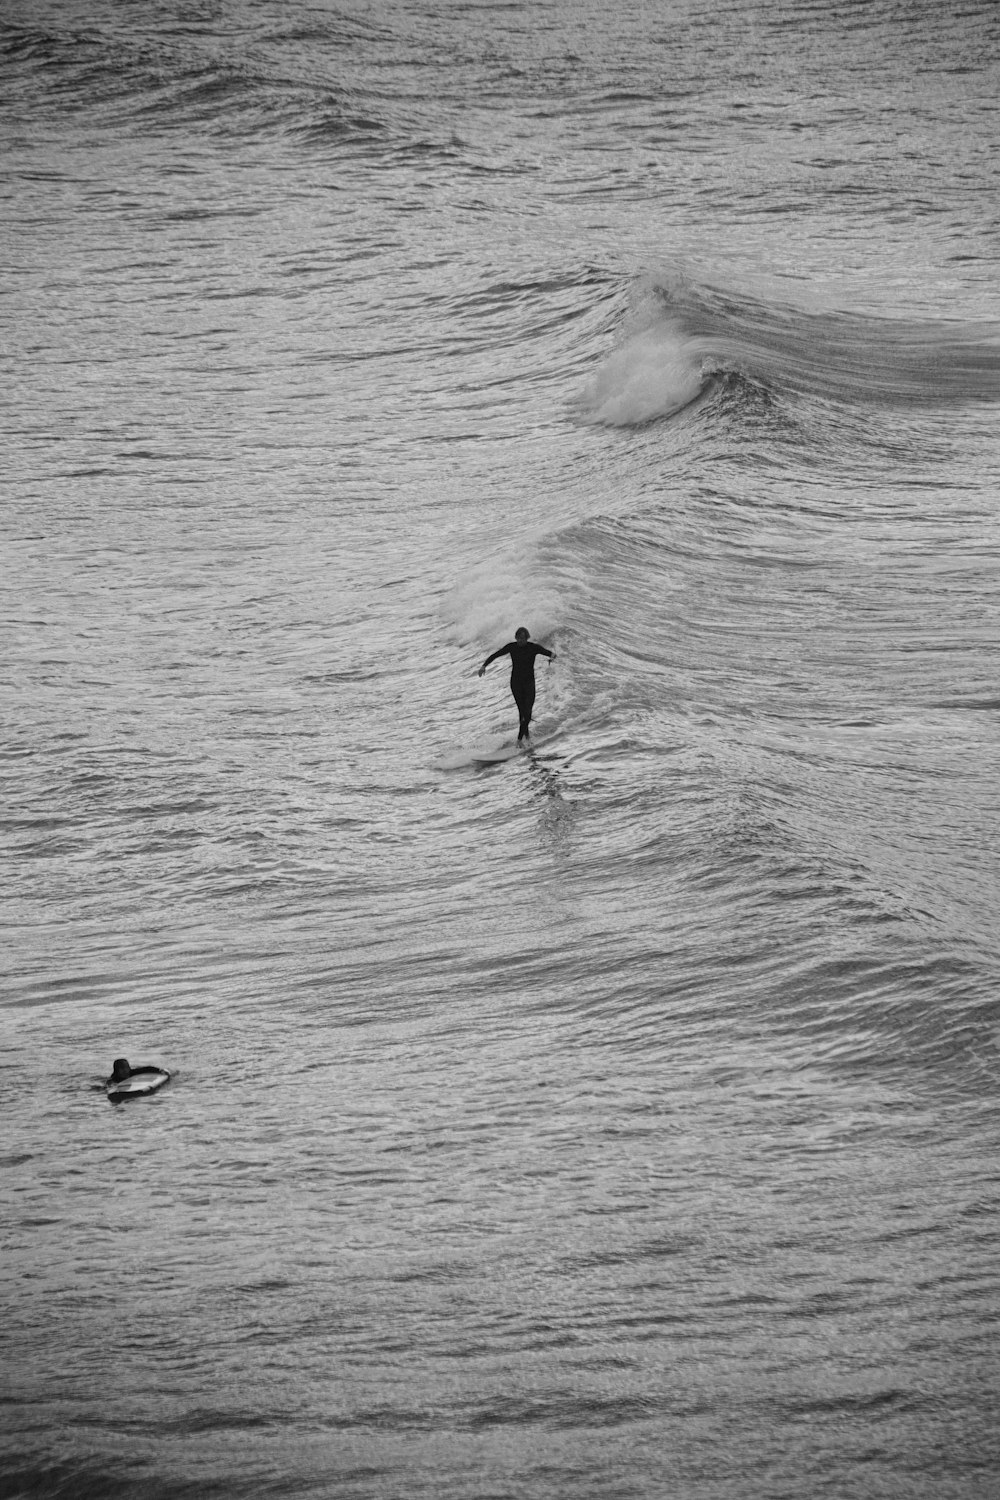 uma pessoa que surfa uma onda em cima de uma prancha de surf